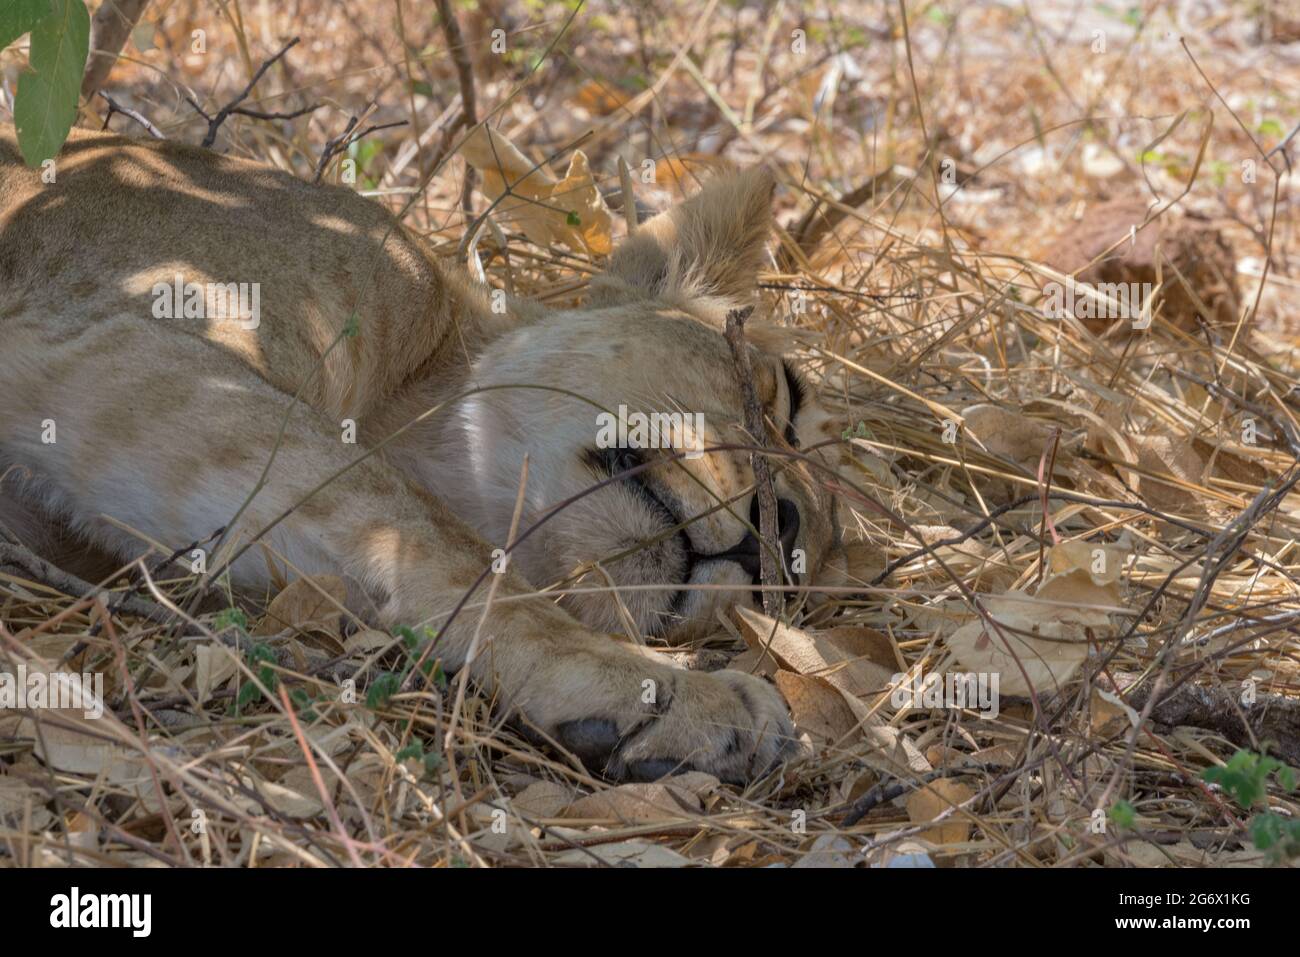 Piquant de lioness à l'ombre dans le parc national de Chobe, Botswana Banque D'Images